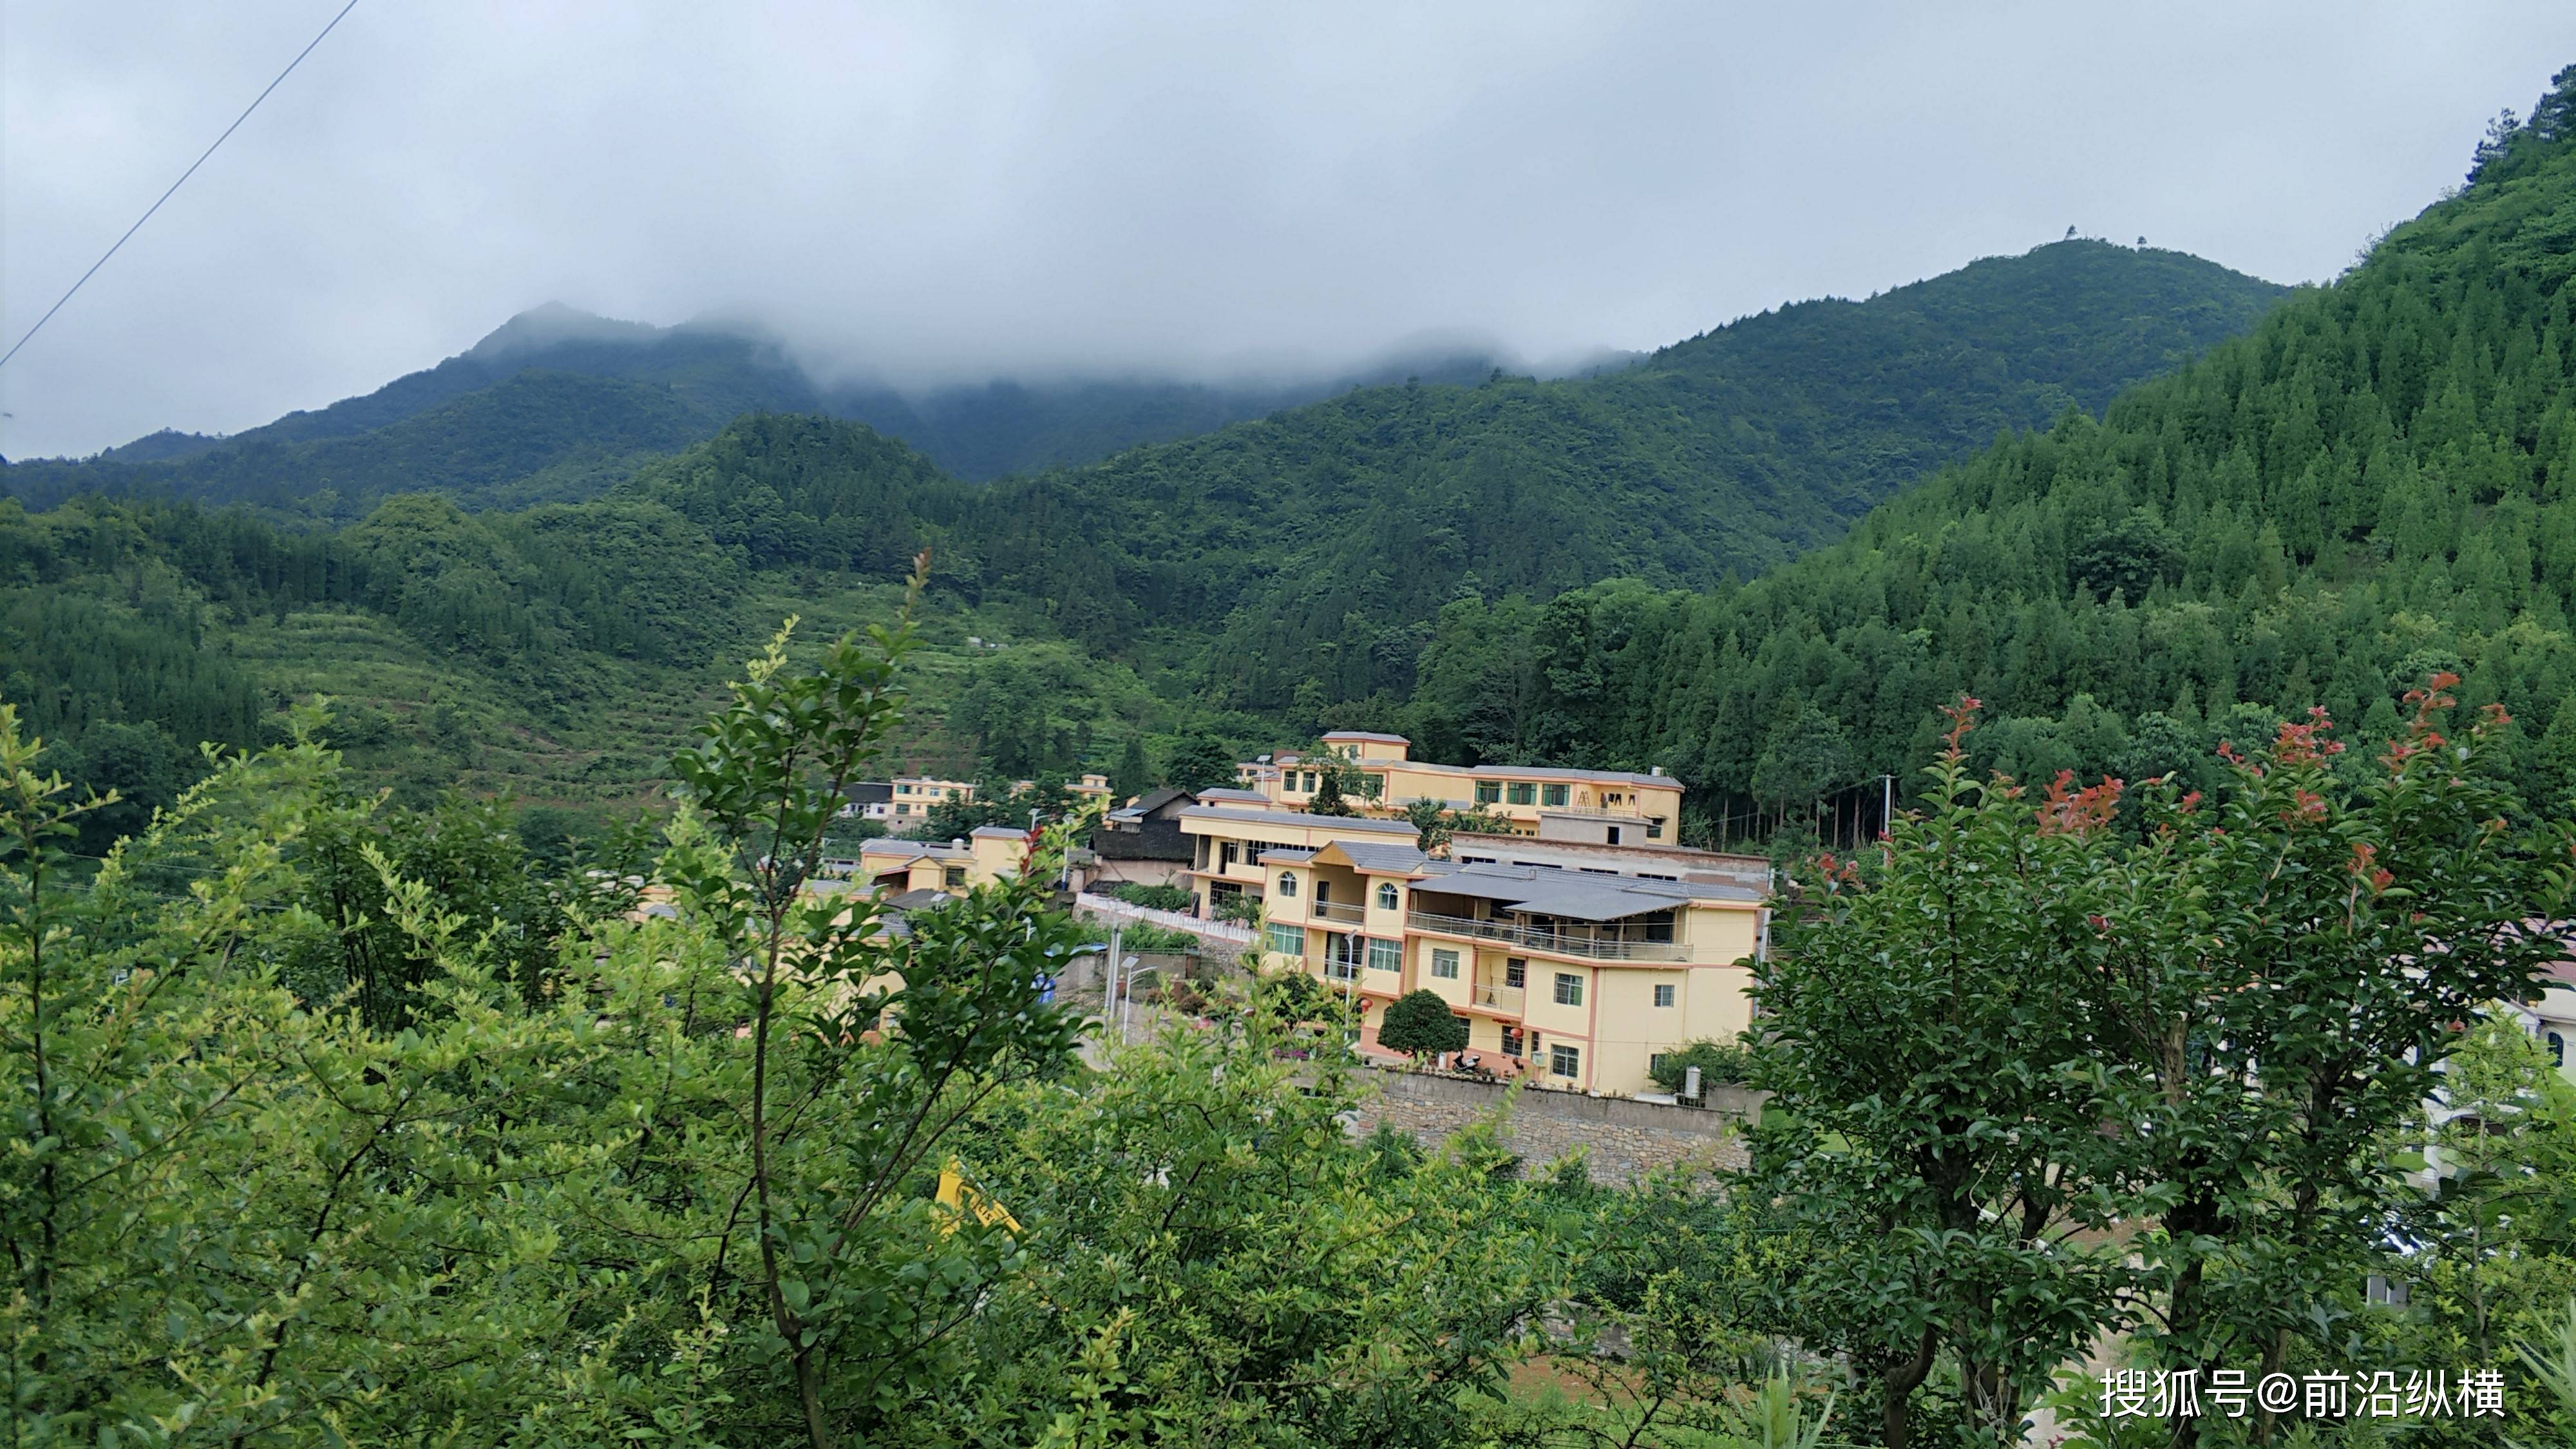 原创贵州探秘:在云雾缭绕的大山里面,建得如此美丽村庄竟如世外桃源